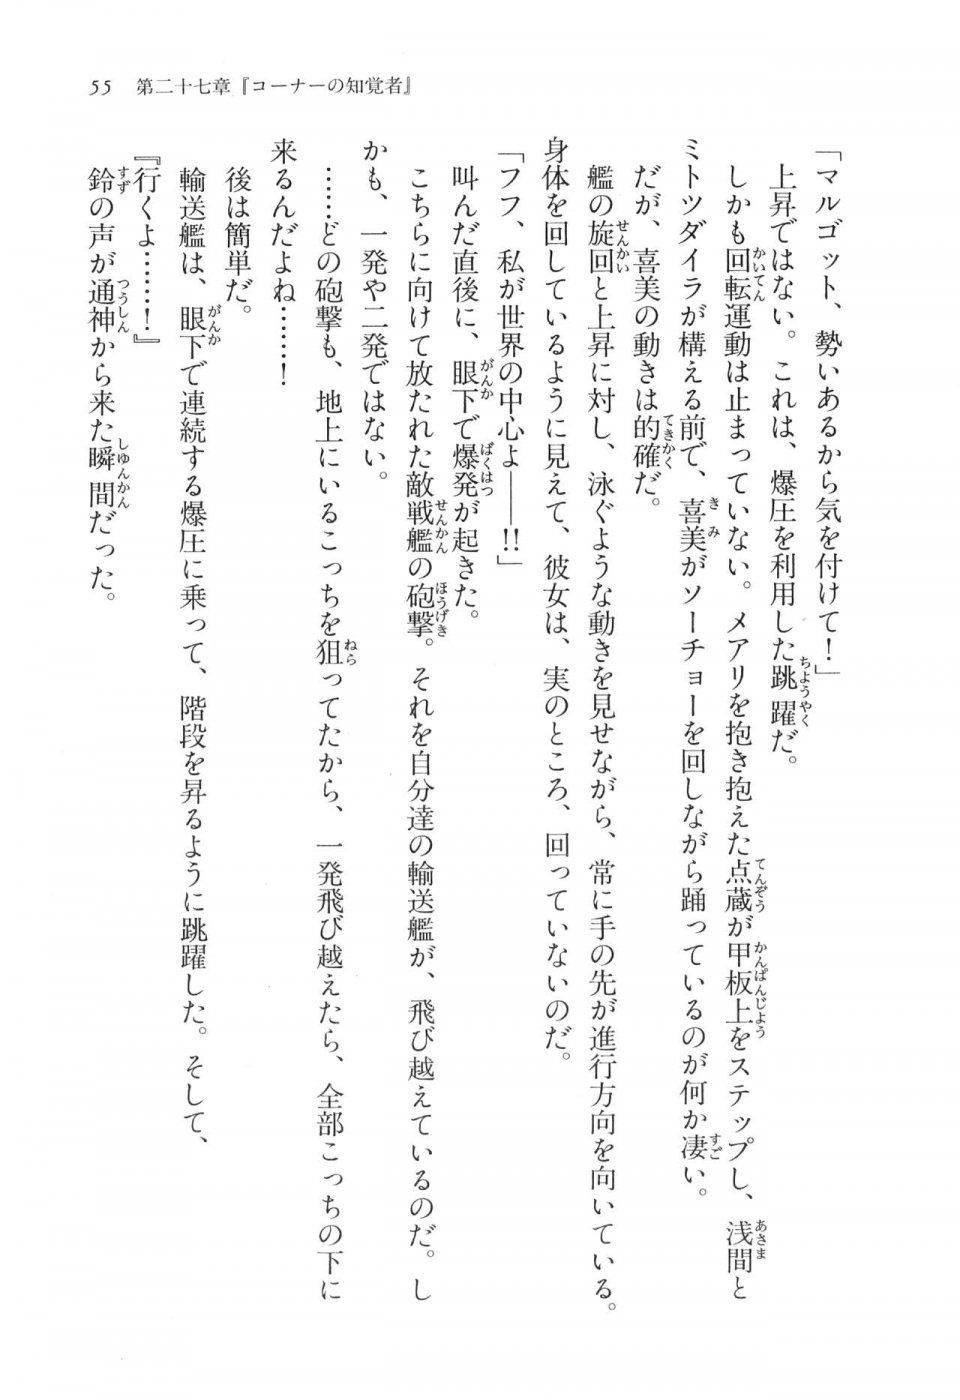 Kyoukai Senjou no Horizon LN Vol 17(7B) - Photo #55